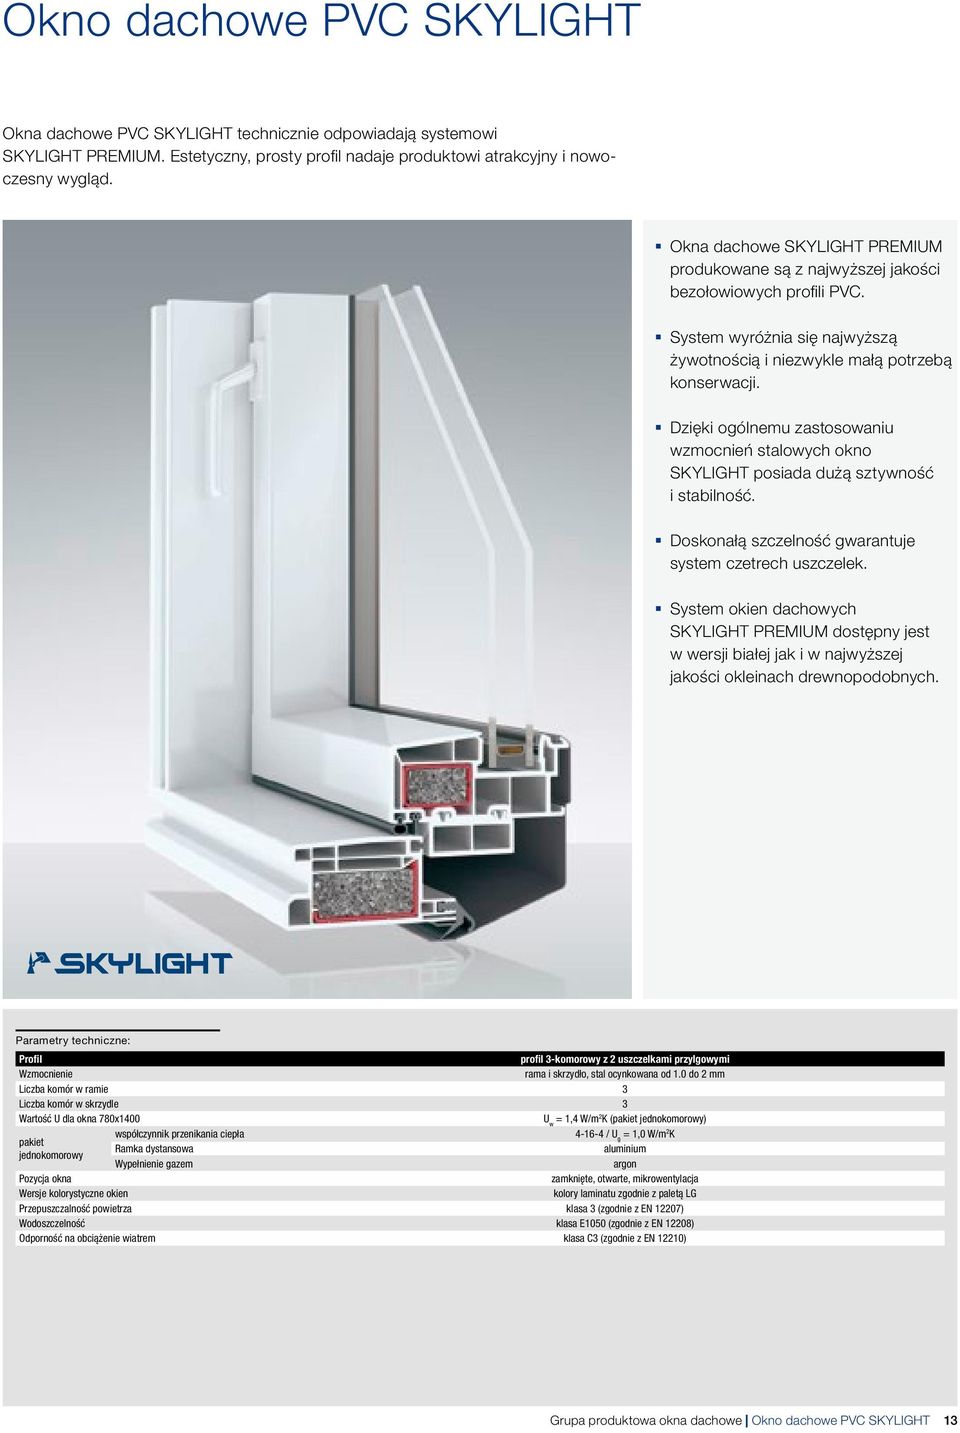 Dzięki oólnemu zastosowaniu wzmocnień stalowych okno SKYLIGHT posiada dużą sztywność i stabilność. Doskonałą szczelność warantuje system czetrech uszczelek.